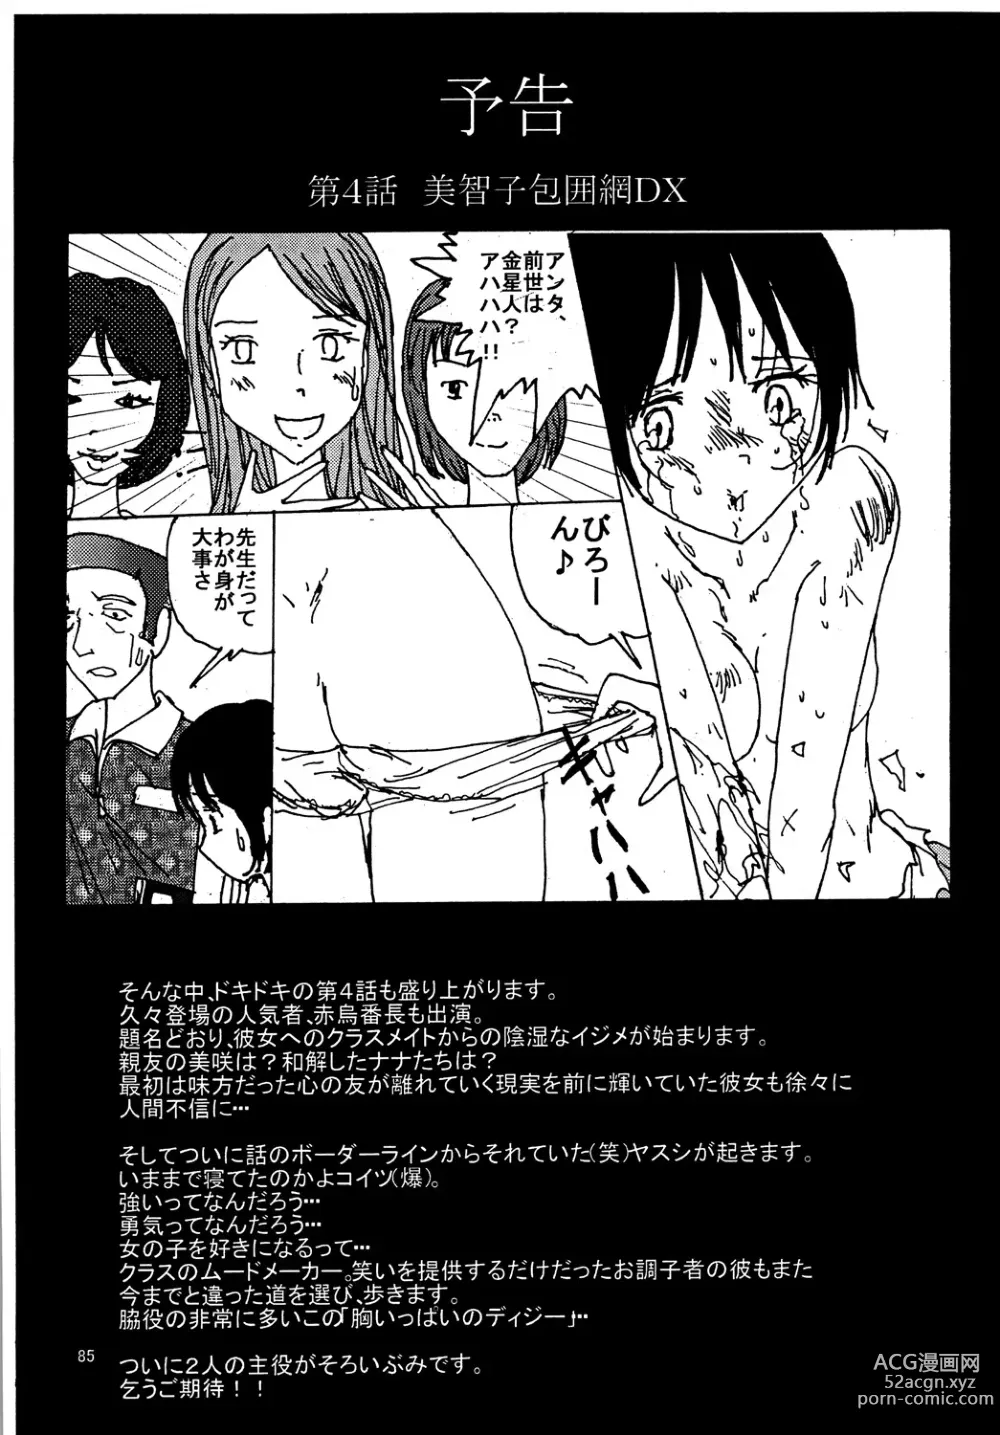 Page 84 of doujinshi Mune Ippai no Dizzy